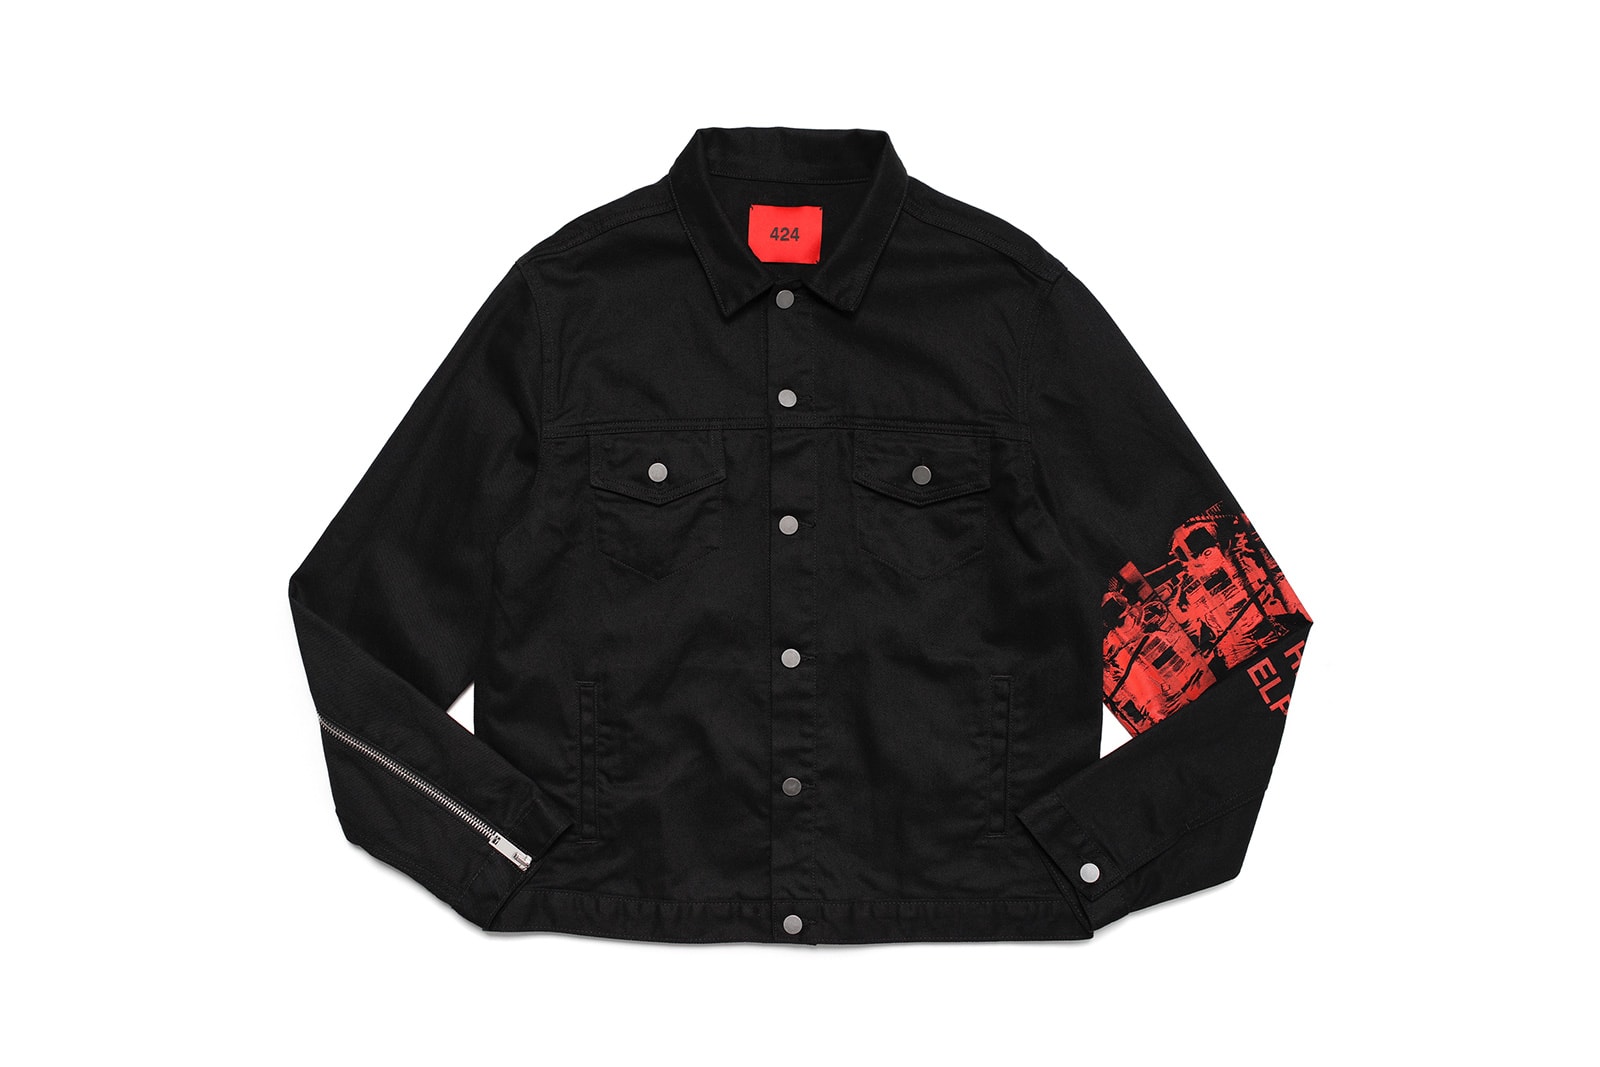 424 Fall/Winter 2018 Drop 1 Release Info bleach dyed fashion denim jacket jeans tie dye fairfax streetwear